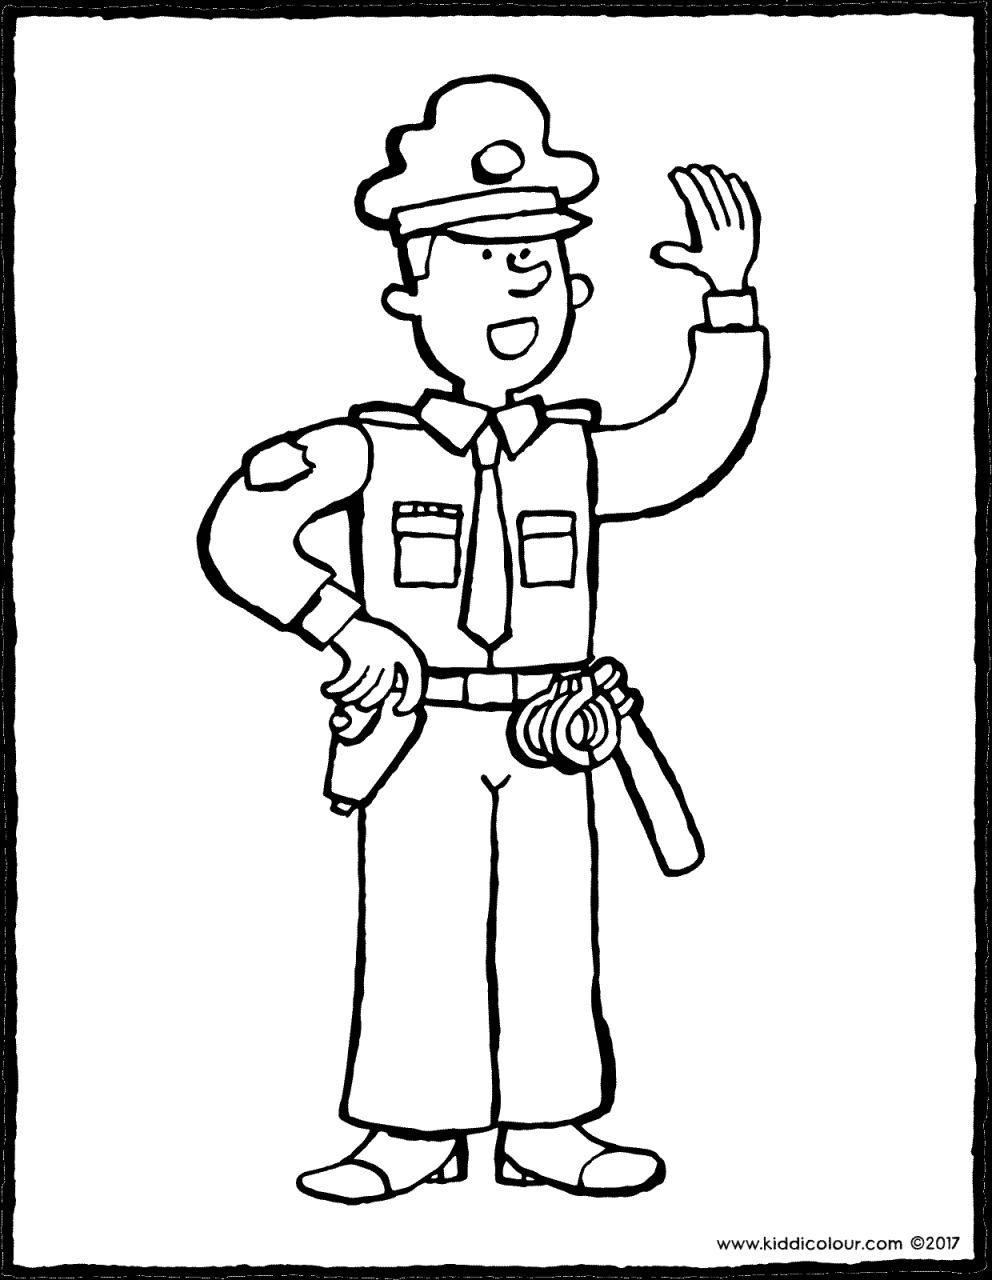 police officer kiddicolour